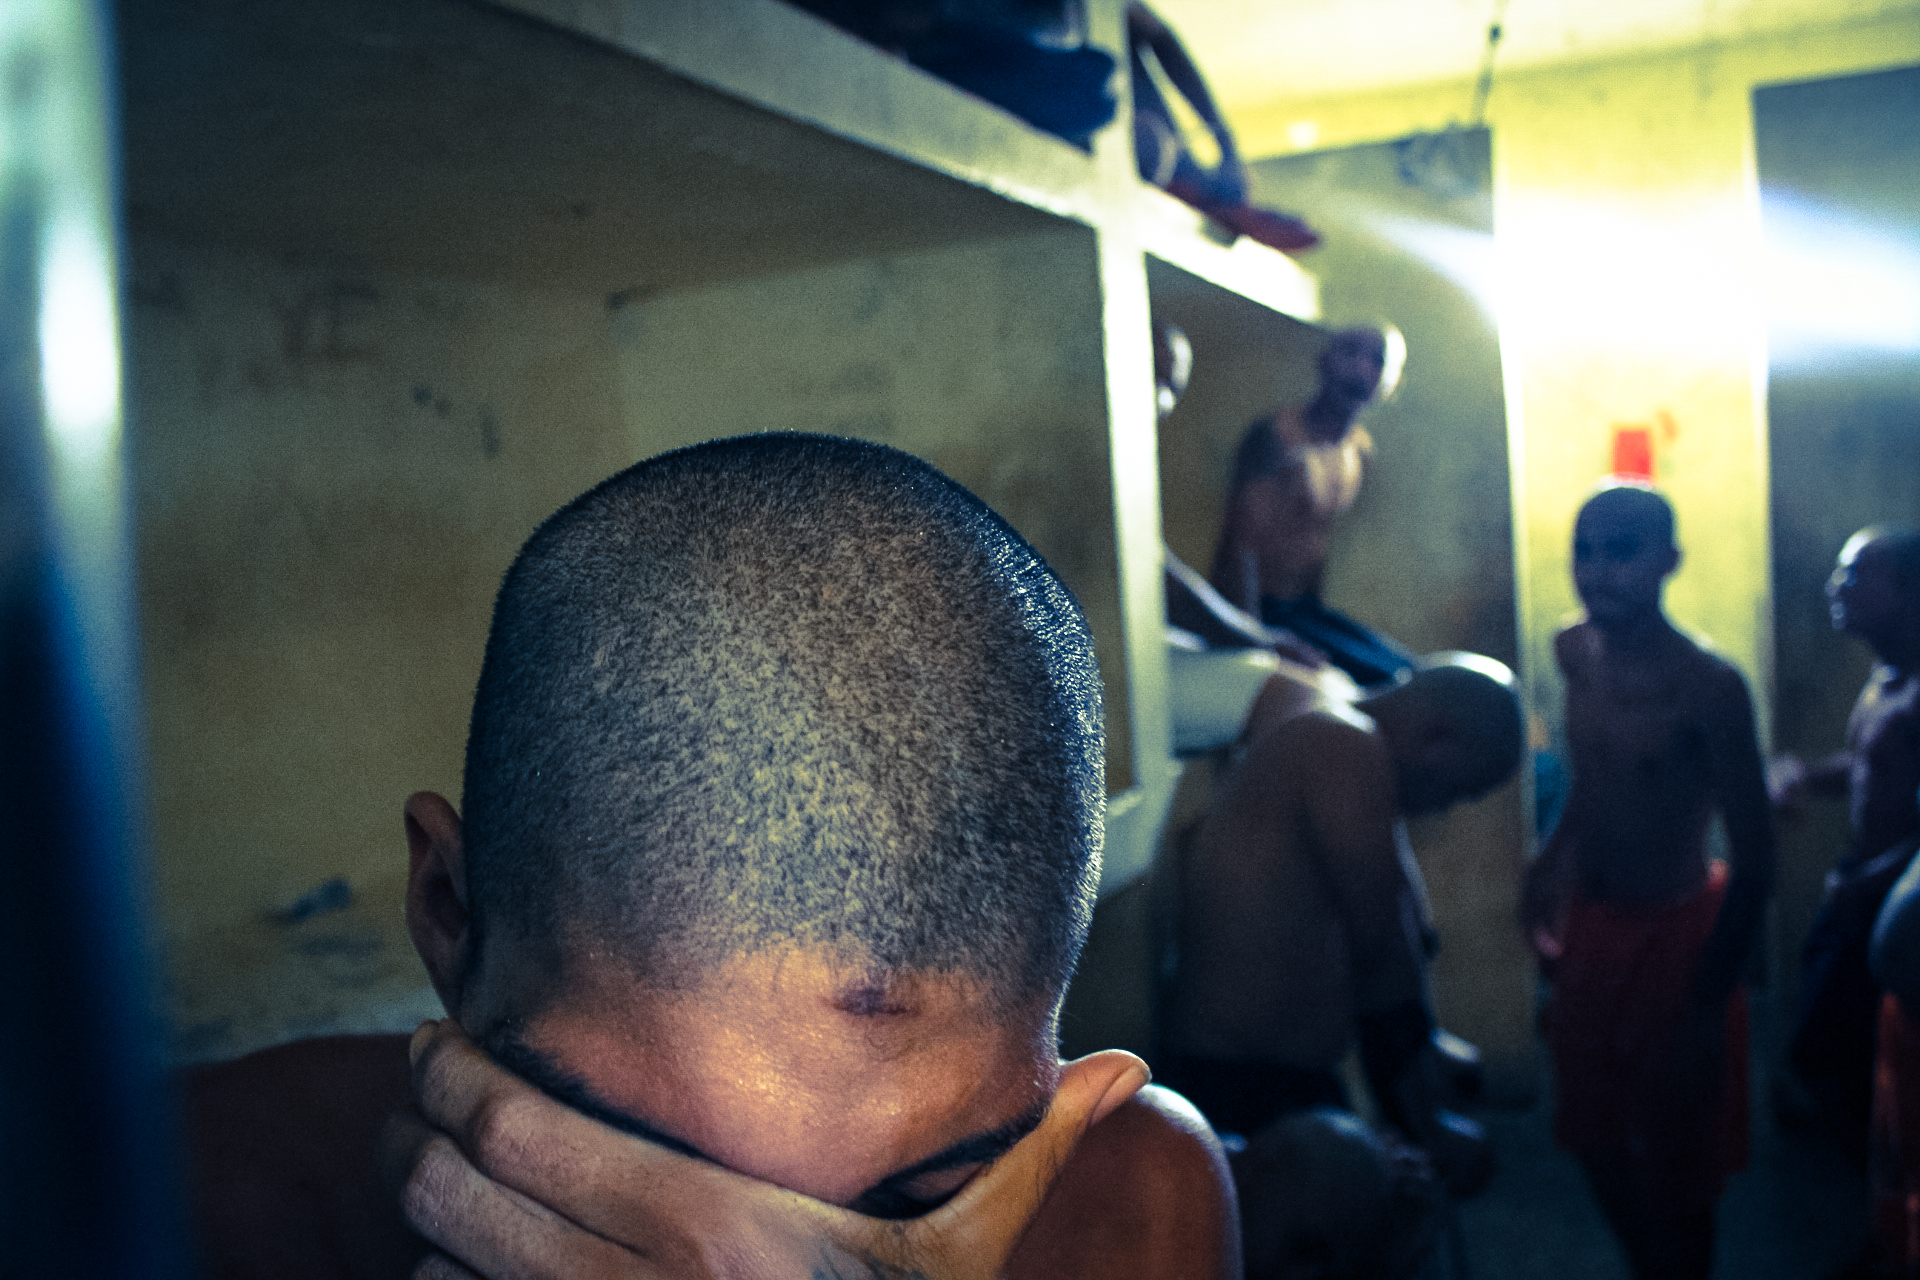 Detento na unidade Triagem do Complexo Penitenciário de Pedrinhas mostra marcas de violência causadas, segundo ele, pela polícia no momento de sua detenção. (foto: Conectas)